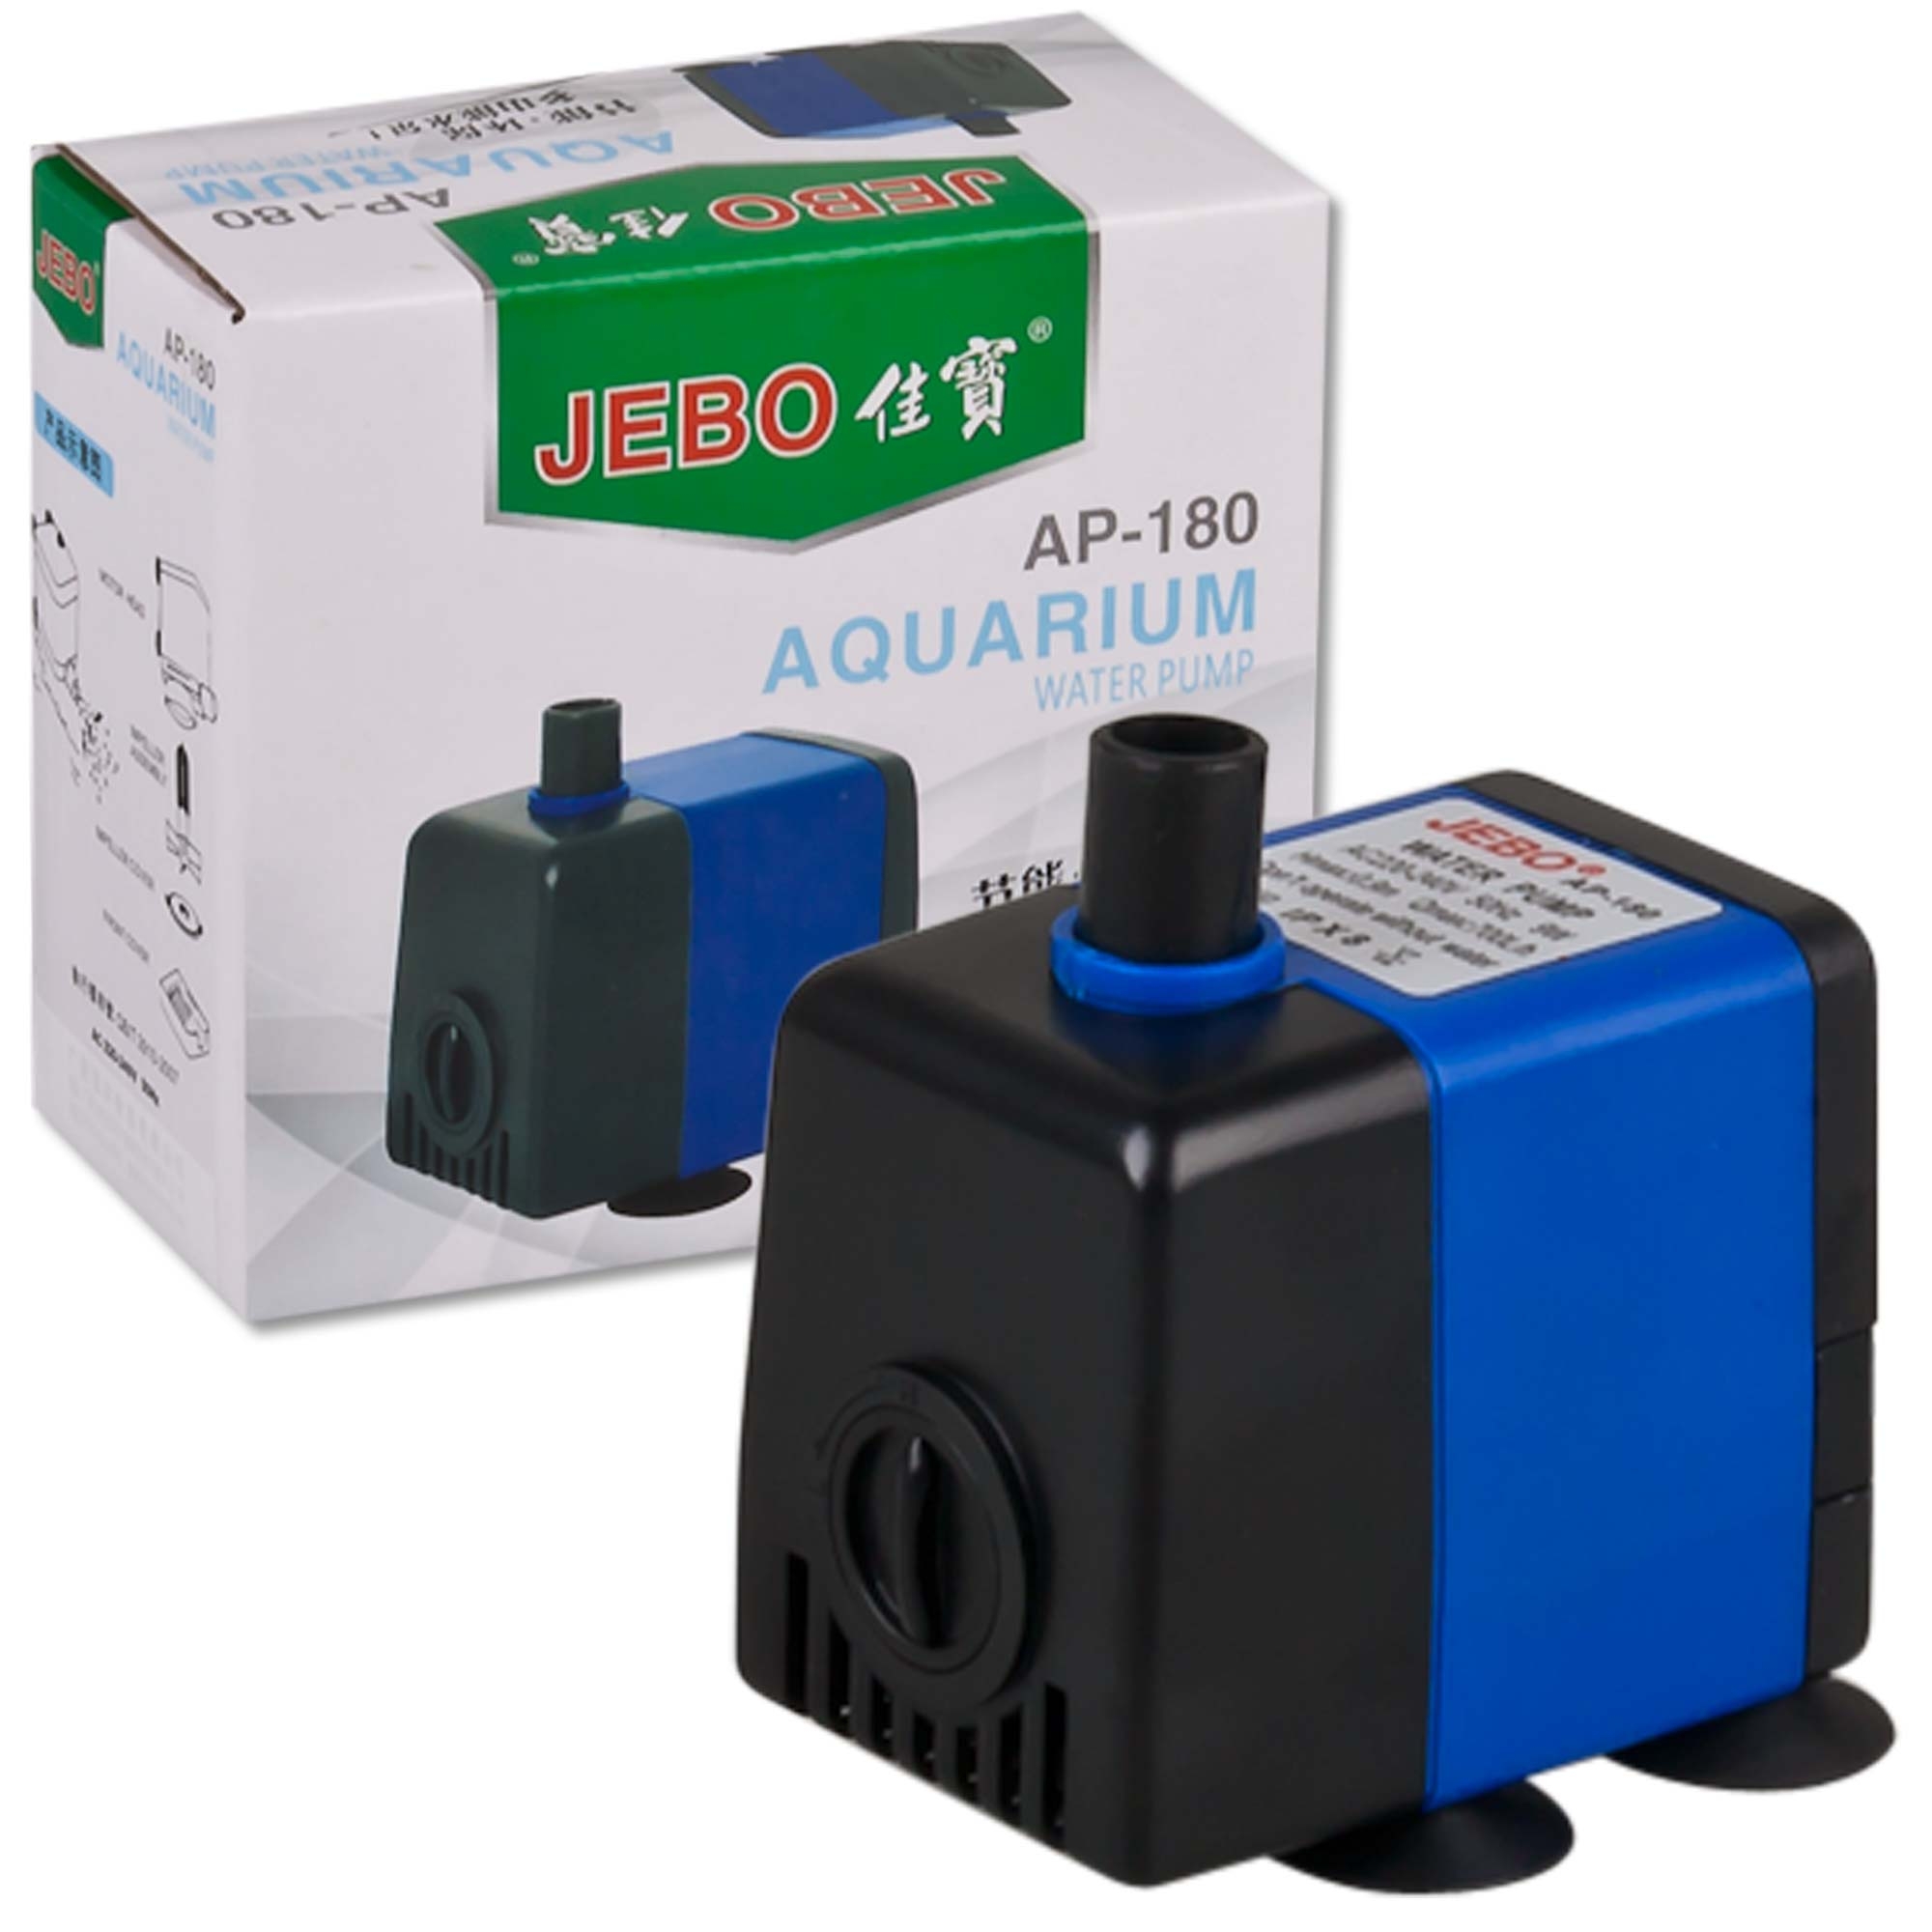 ECO Wasserpumpe Teichpumpe Aquarium Pumpe Filterpumpe Durchfluss einstellbar DHL 